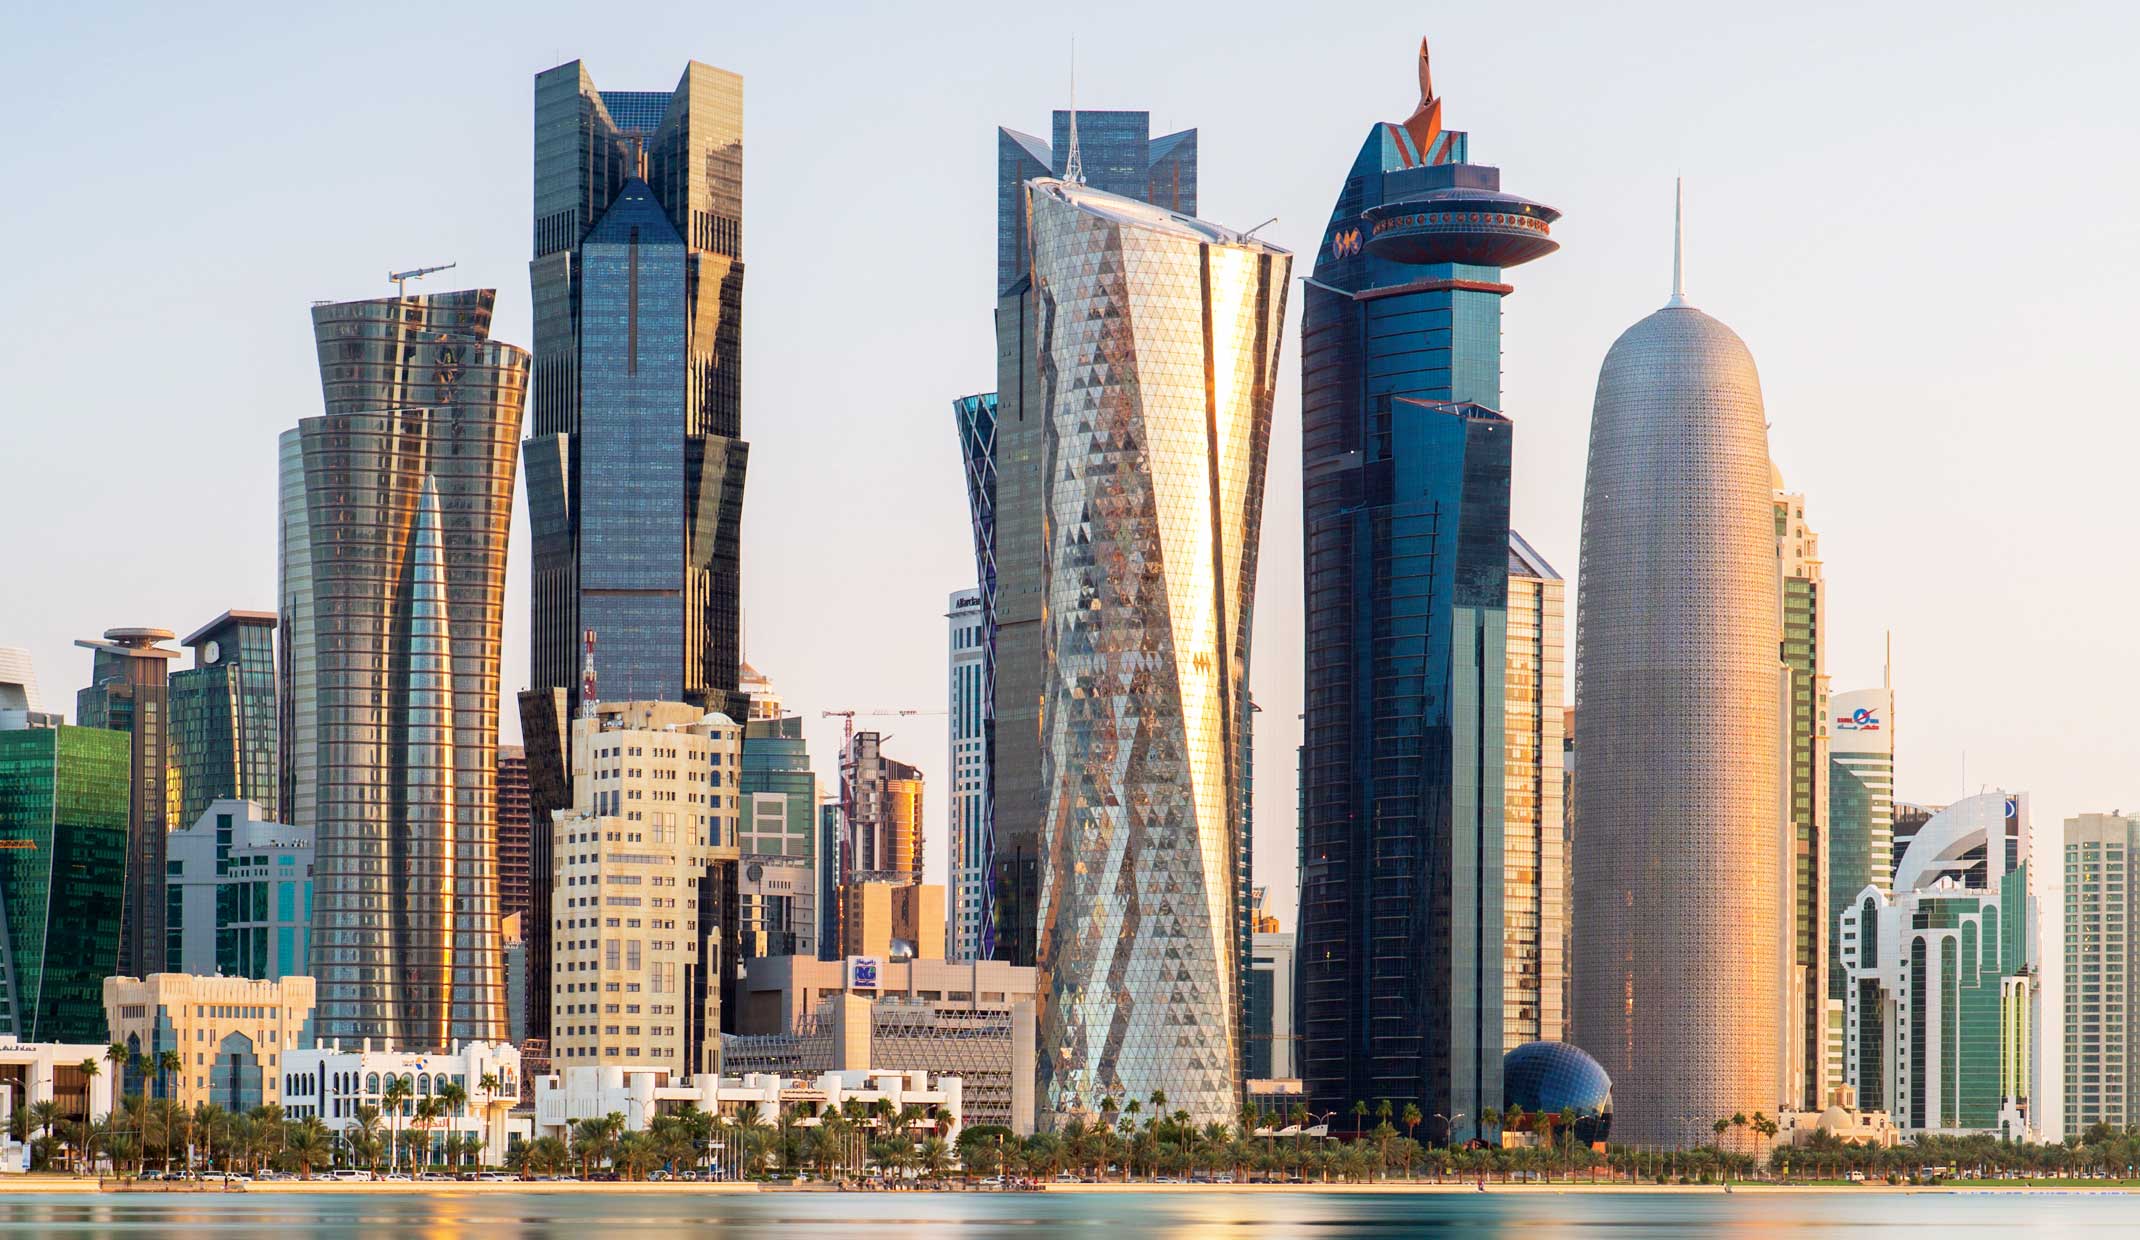 دولة قطر تستبعد الركود الاقتصادي في البلاد بعد كأس العالم